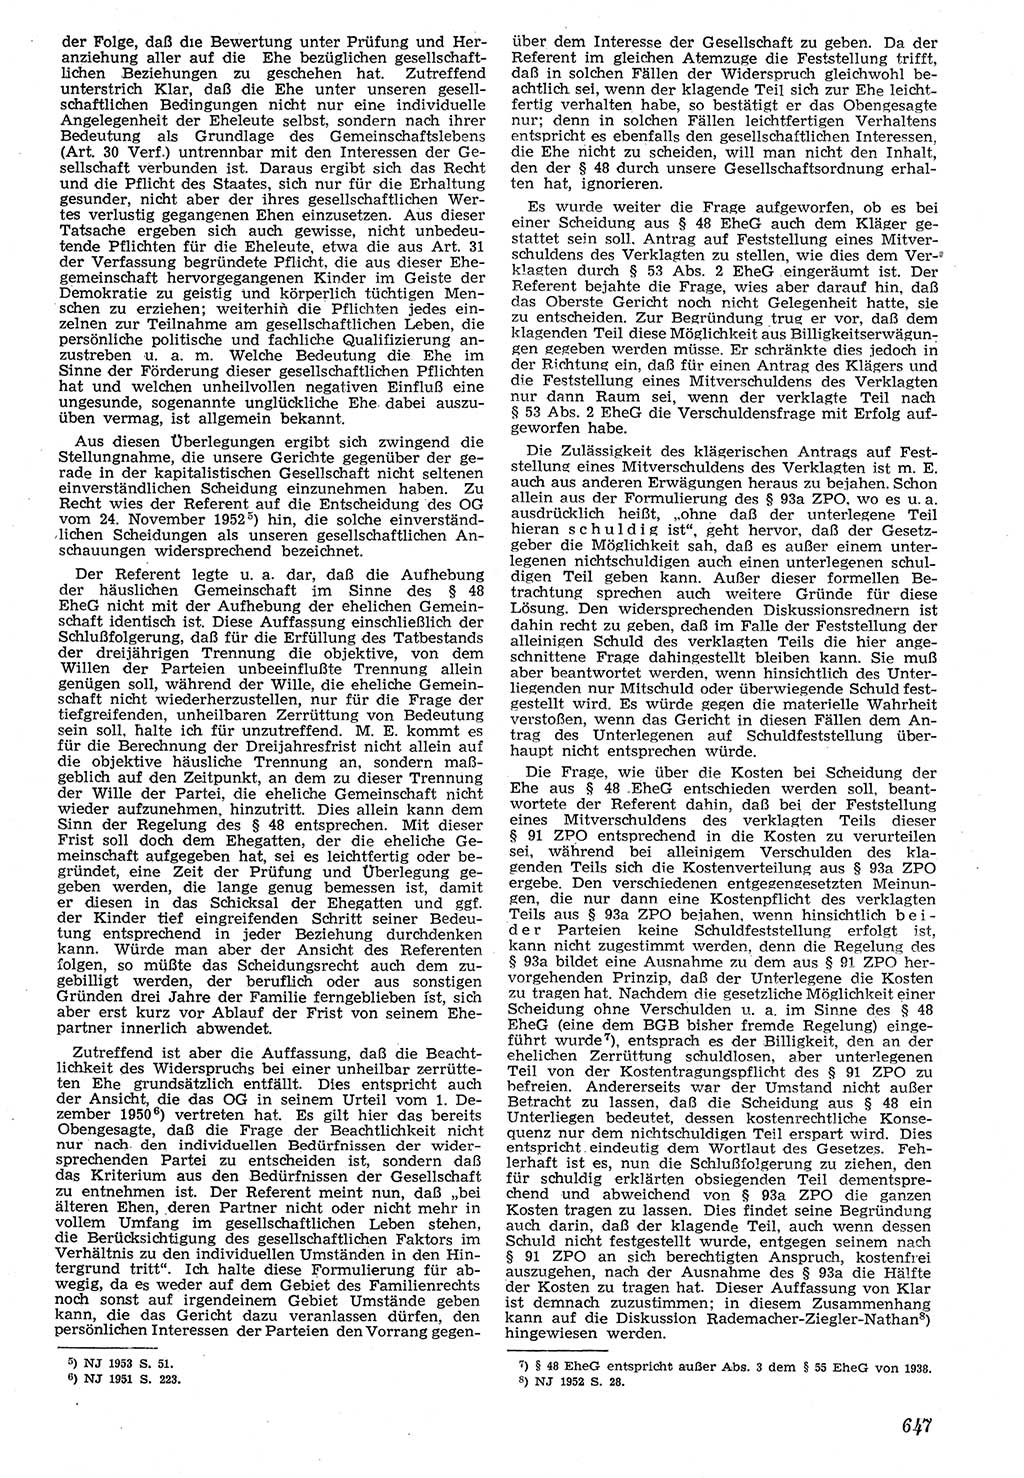 Neue Justiz (NJ), Zeitschrift für Recht und Rechtswissenschaft [Deutsche Demokratische Republik (DDR)], 7. Jahrgang 1953, Seite 647 (NJ DDR 1953, S. 647)